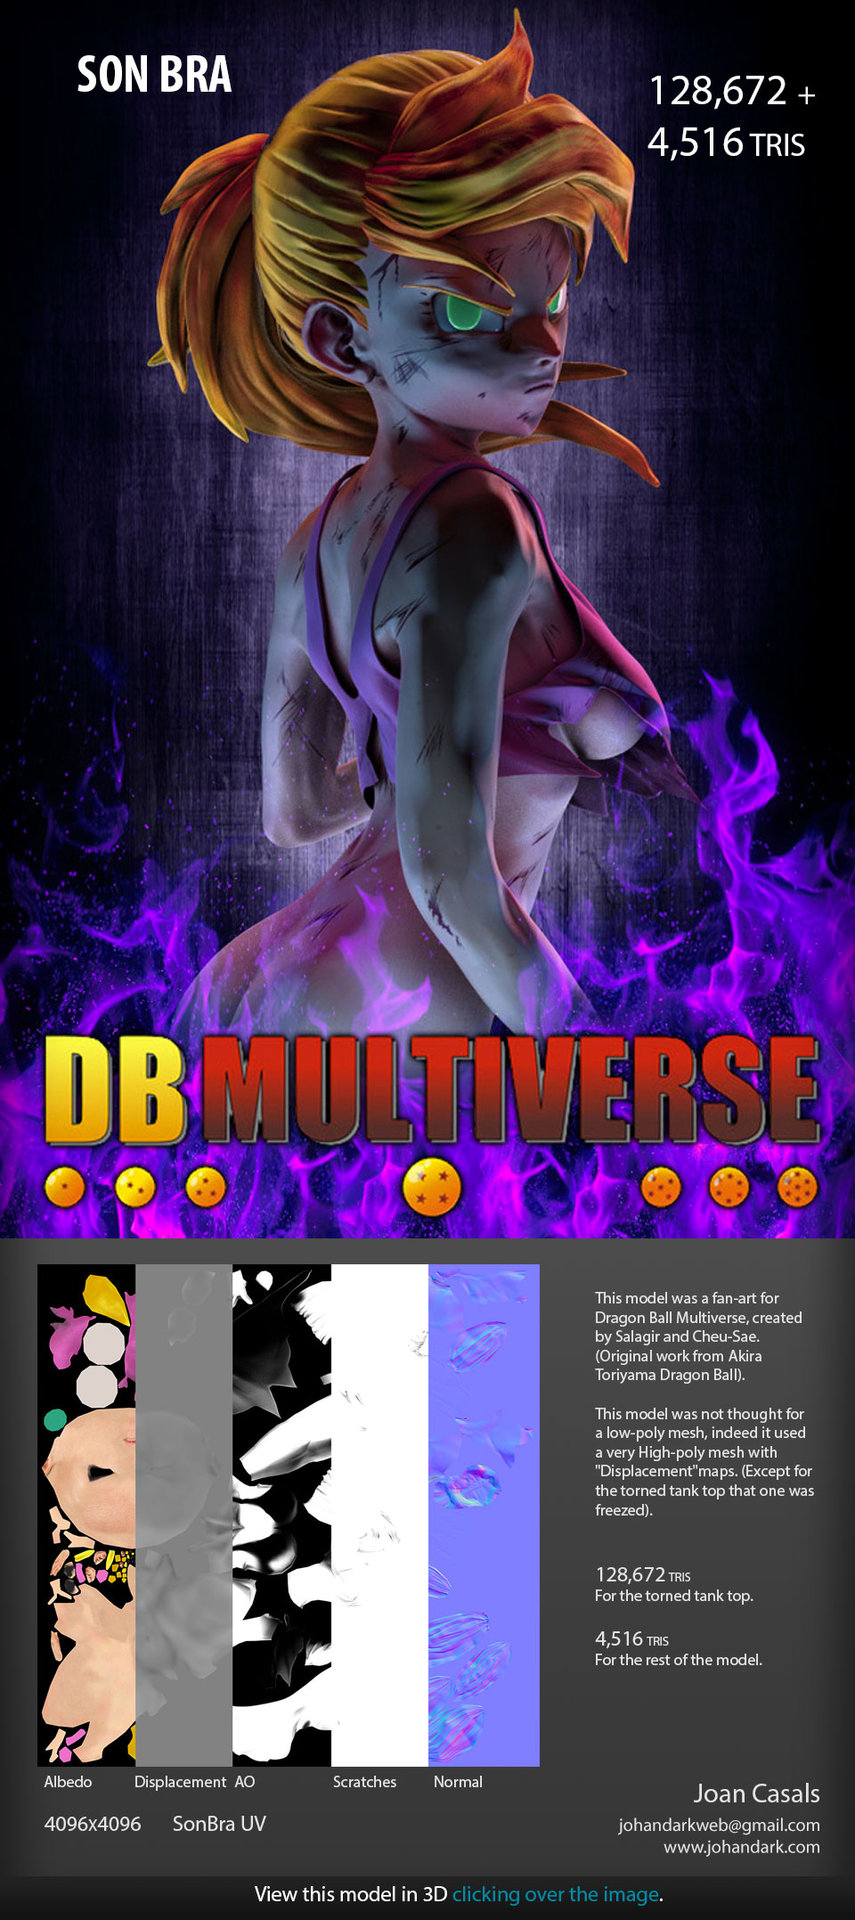 ArtStation - Son Bra - Dragon Ball Multiverse